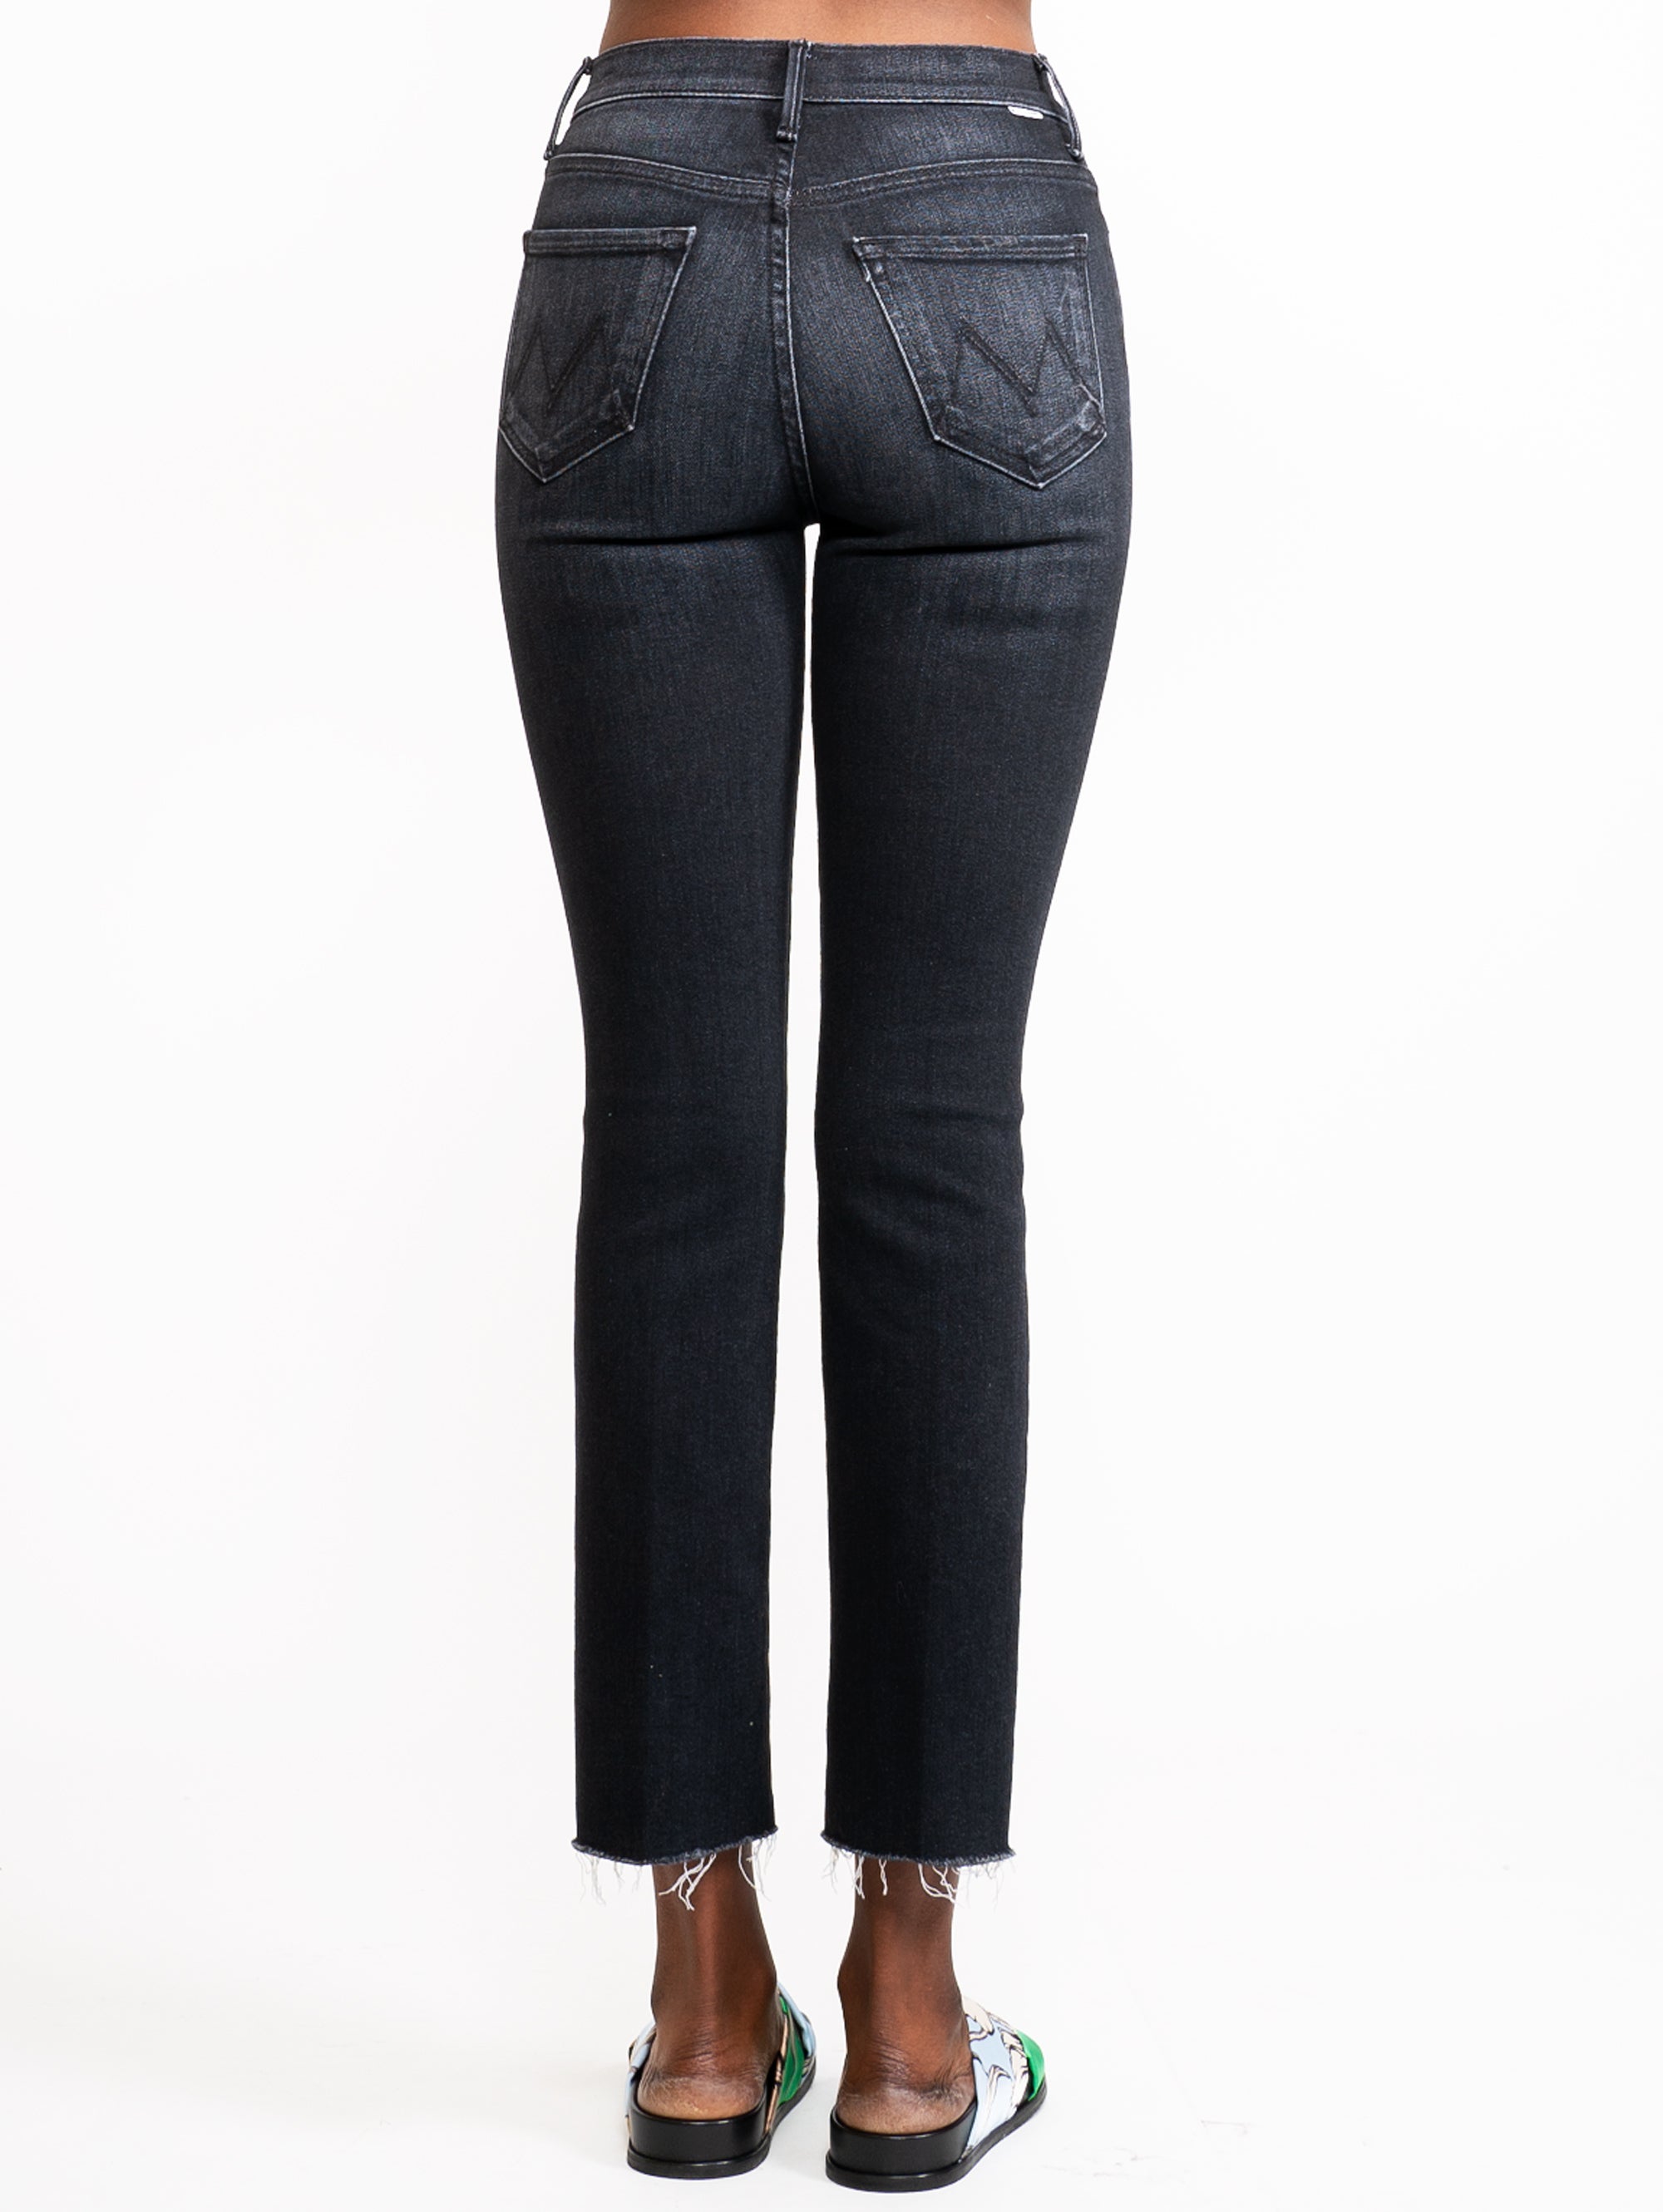 Hoch taillierte Jeans mit schwarzem, ausgefranstem Saum